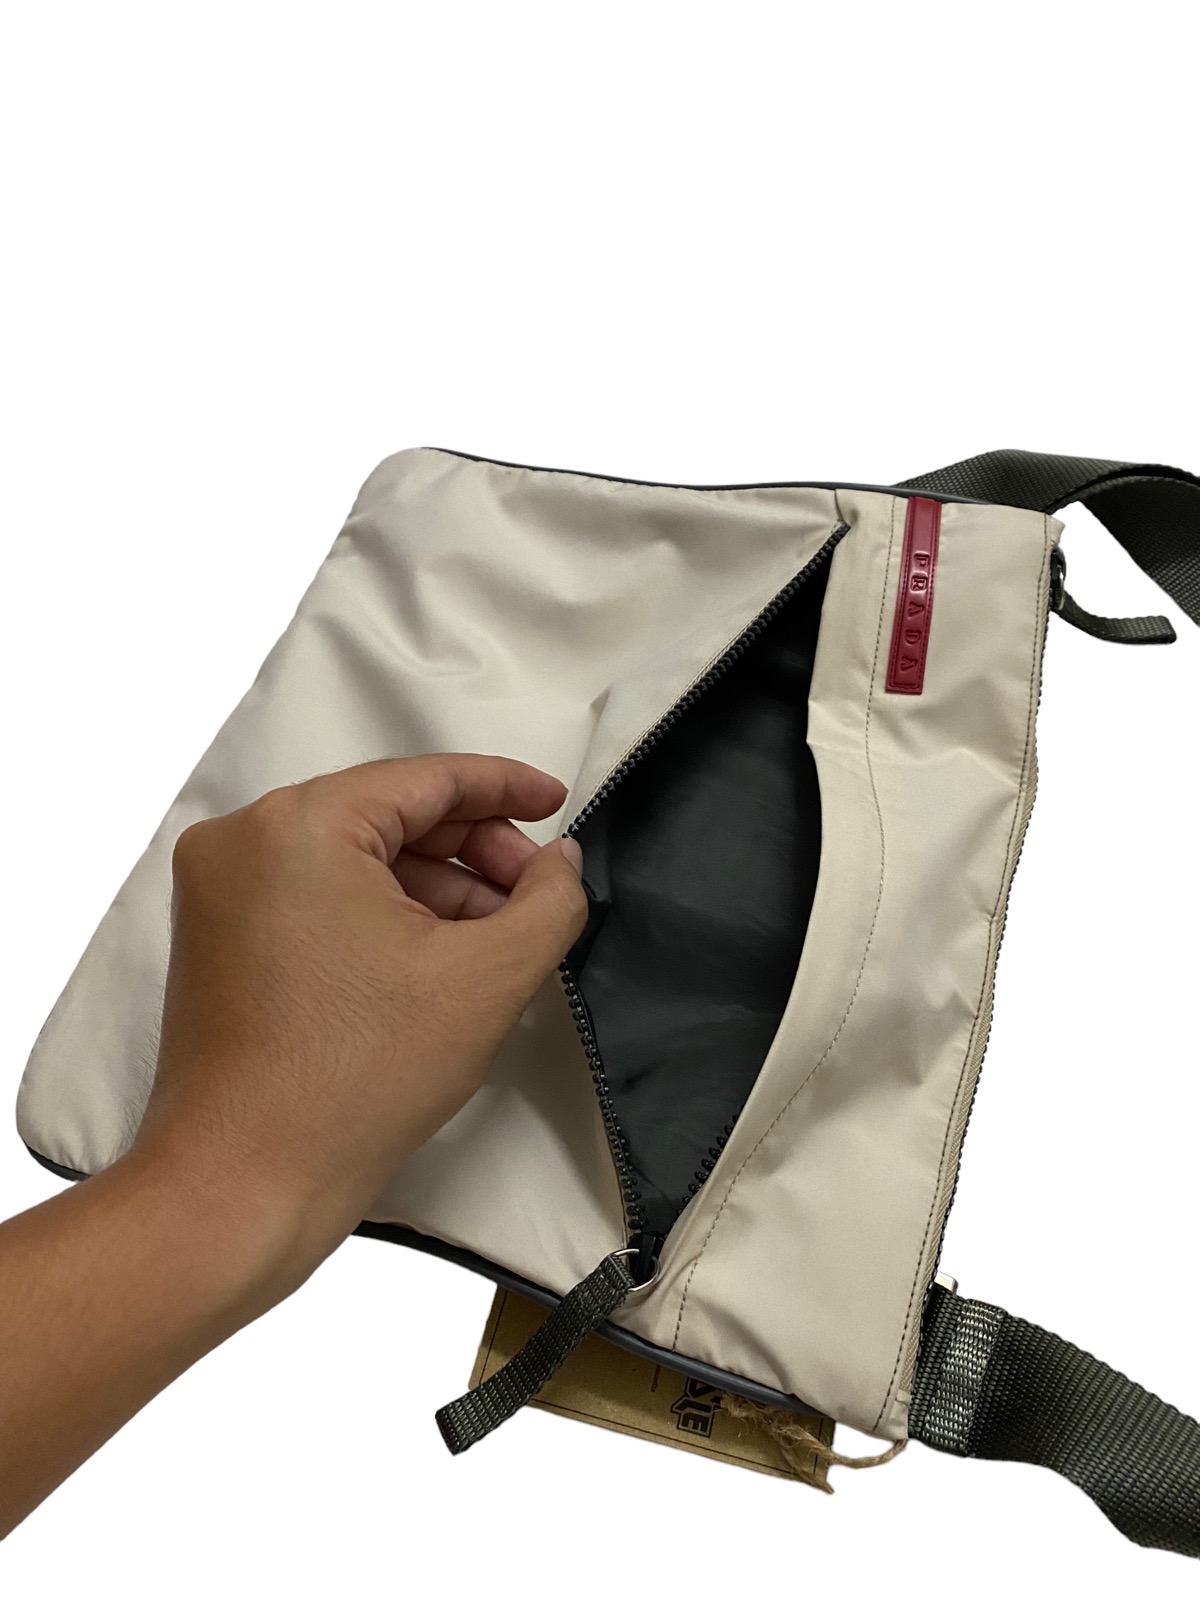 prada Linea Rossa Red Tab Nylon Crossbody Messenger Bag / Shoulder Bag